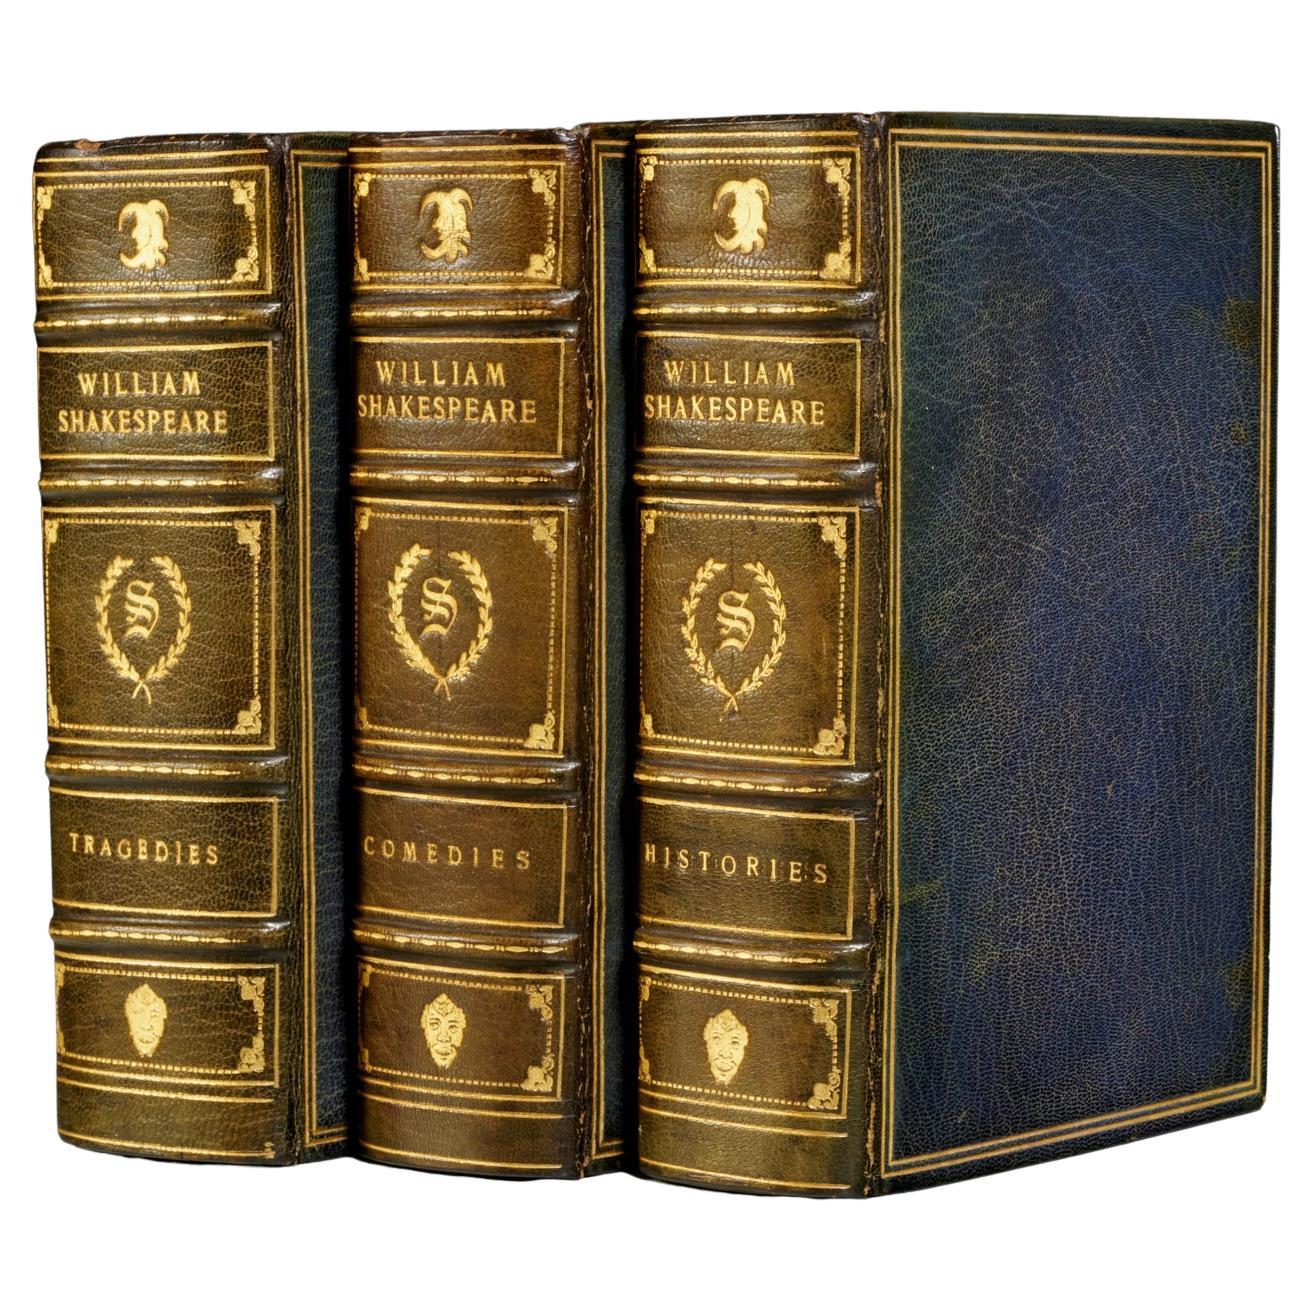 The Works of William Shakespeare, Mayfair Edition, gedruckt in englischem Niger-Leder